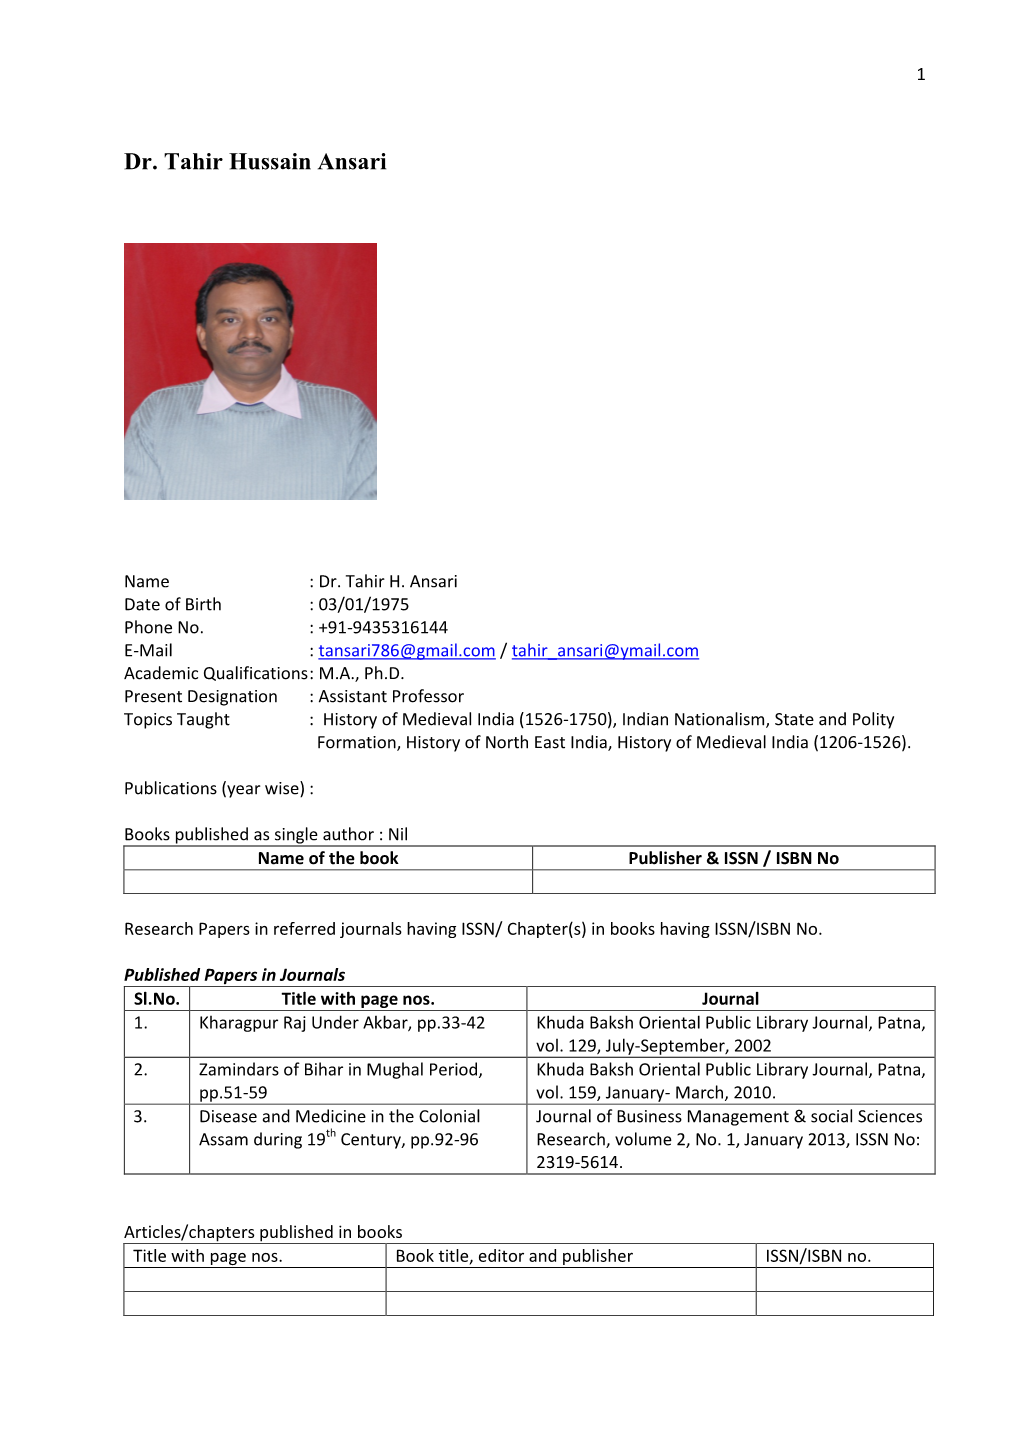 Dr. Tahir Hussain Ansari, Ph.D